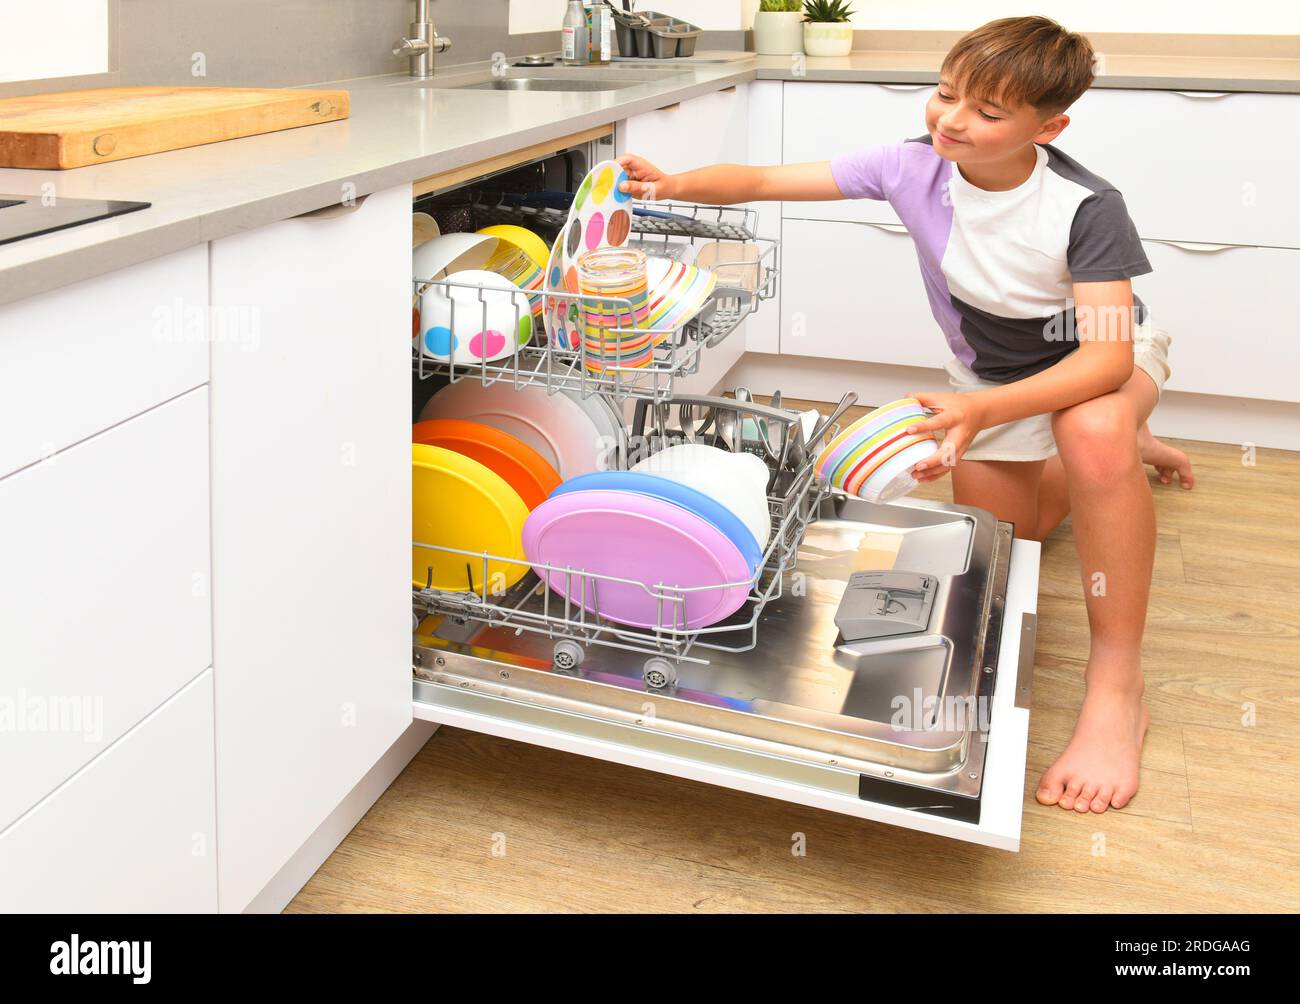 boy with dishwasher Stock Photo